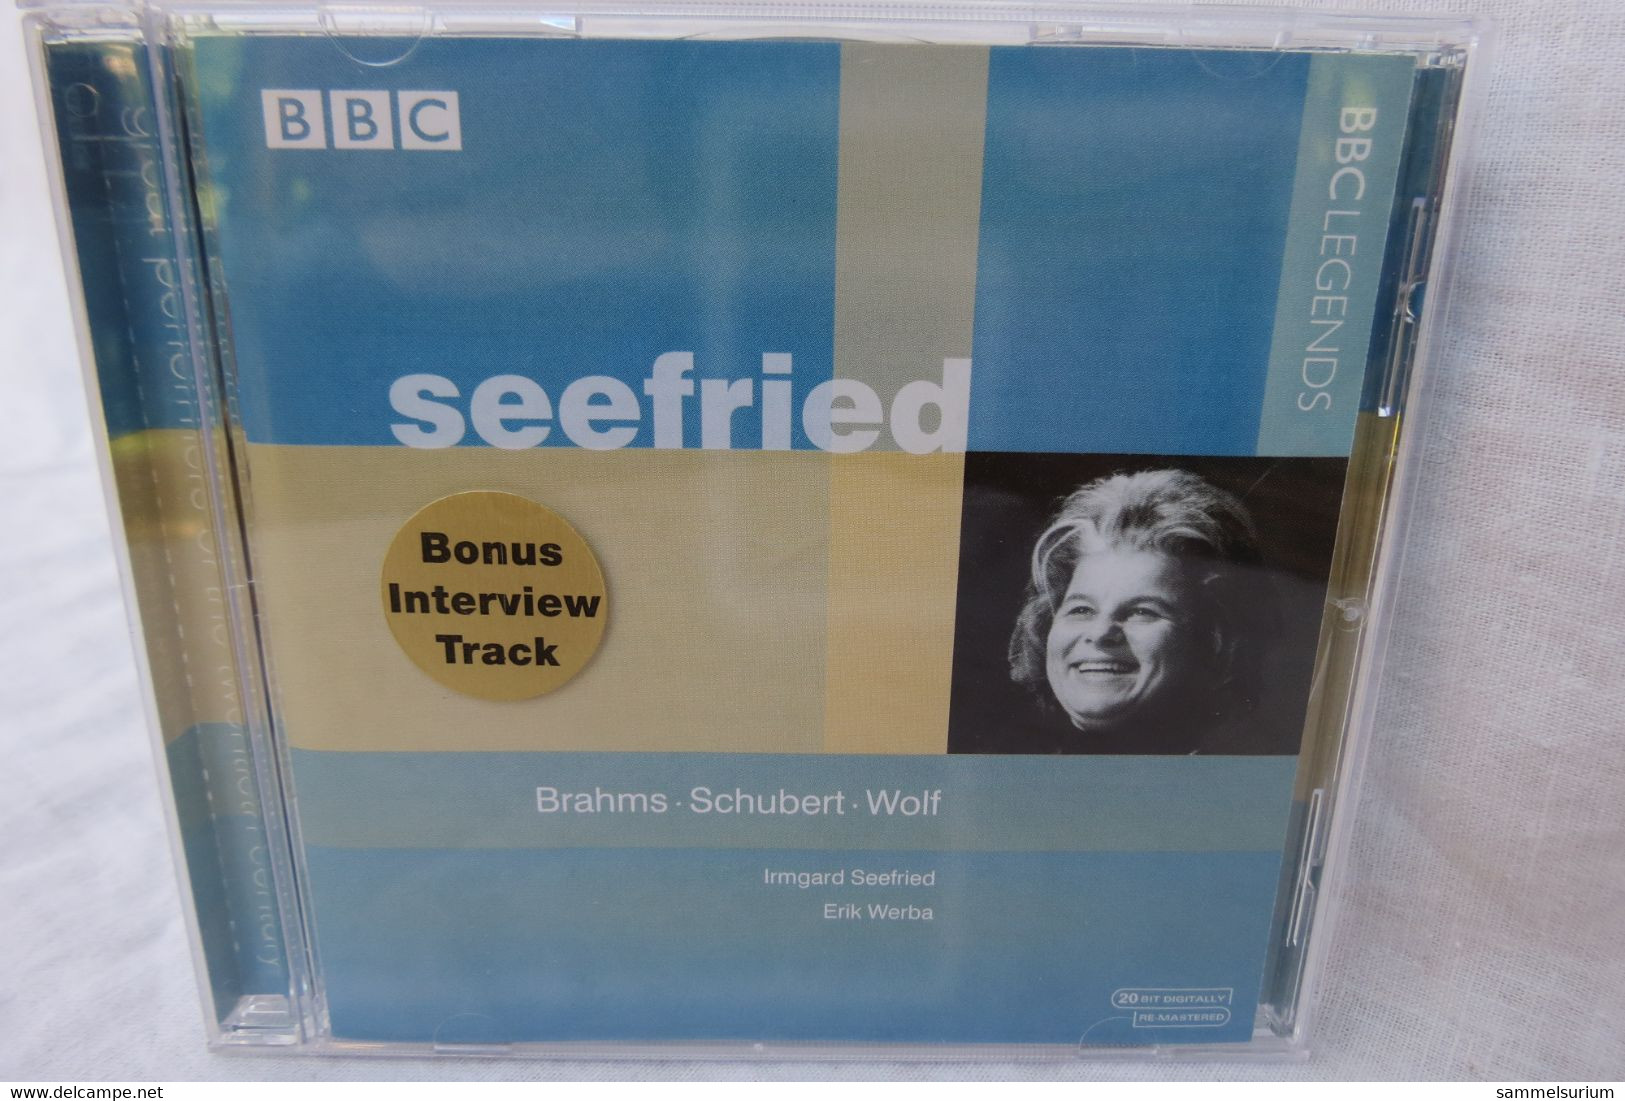 CD "Irmgard Seefried" Brahms, Schubert, Wolf, BBC Legenden - Oper & Operette